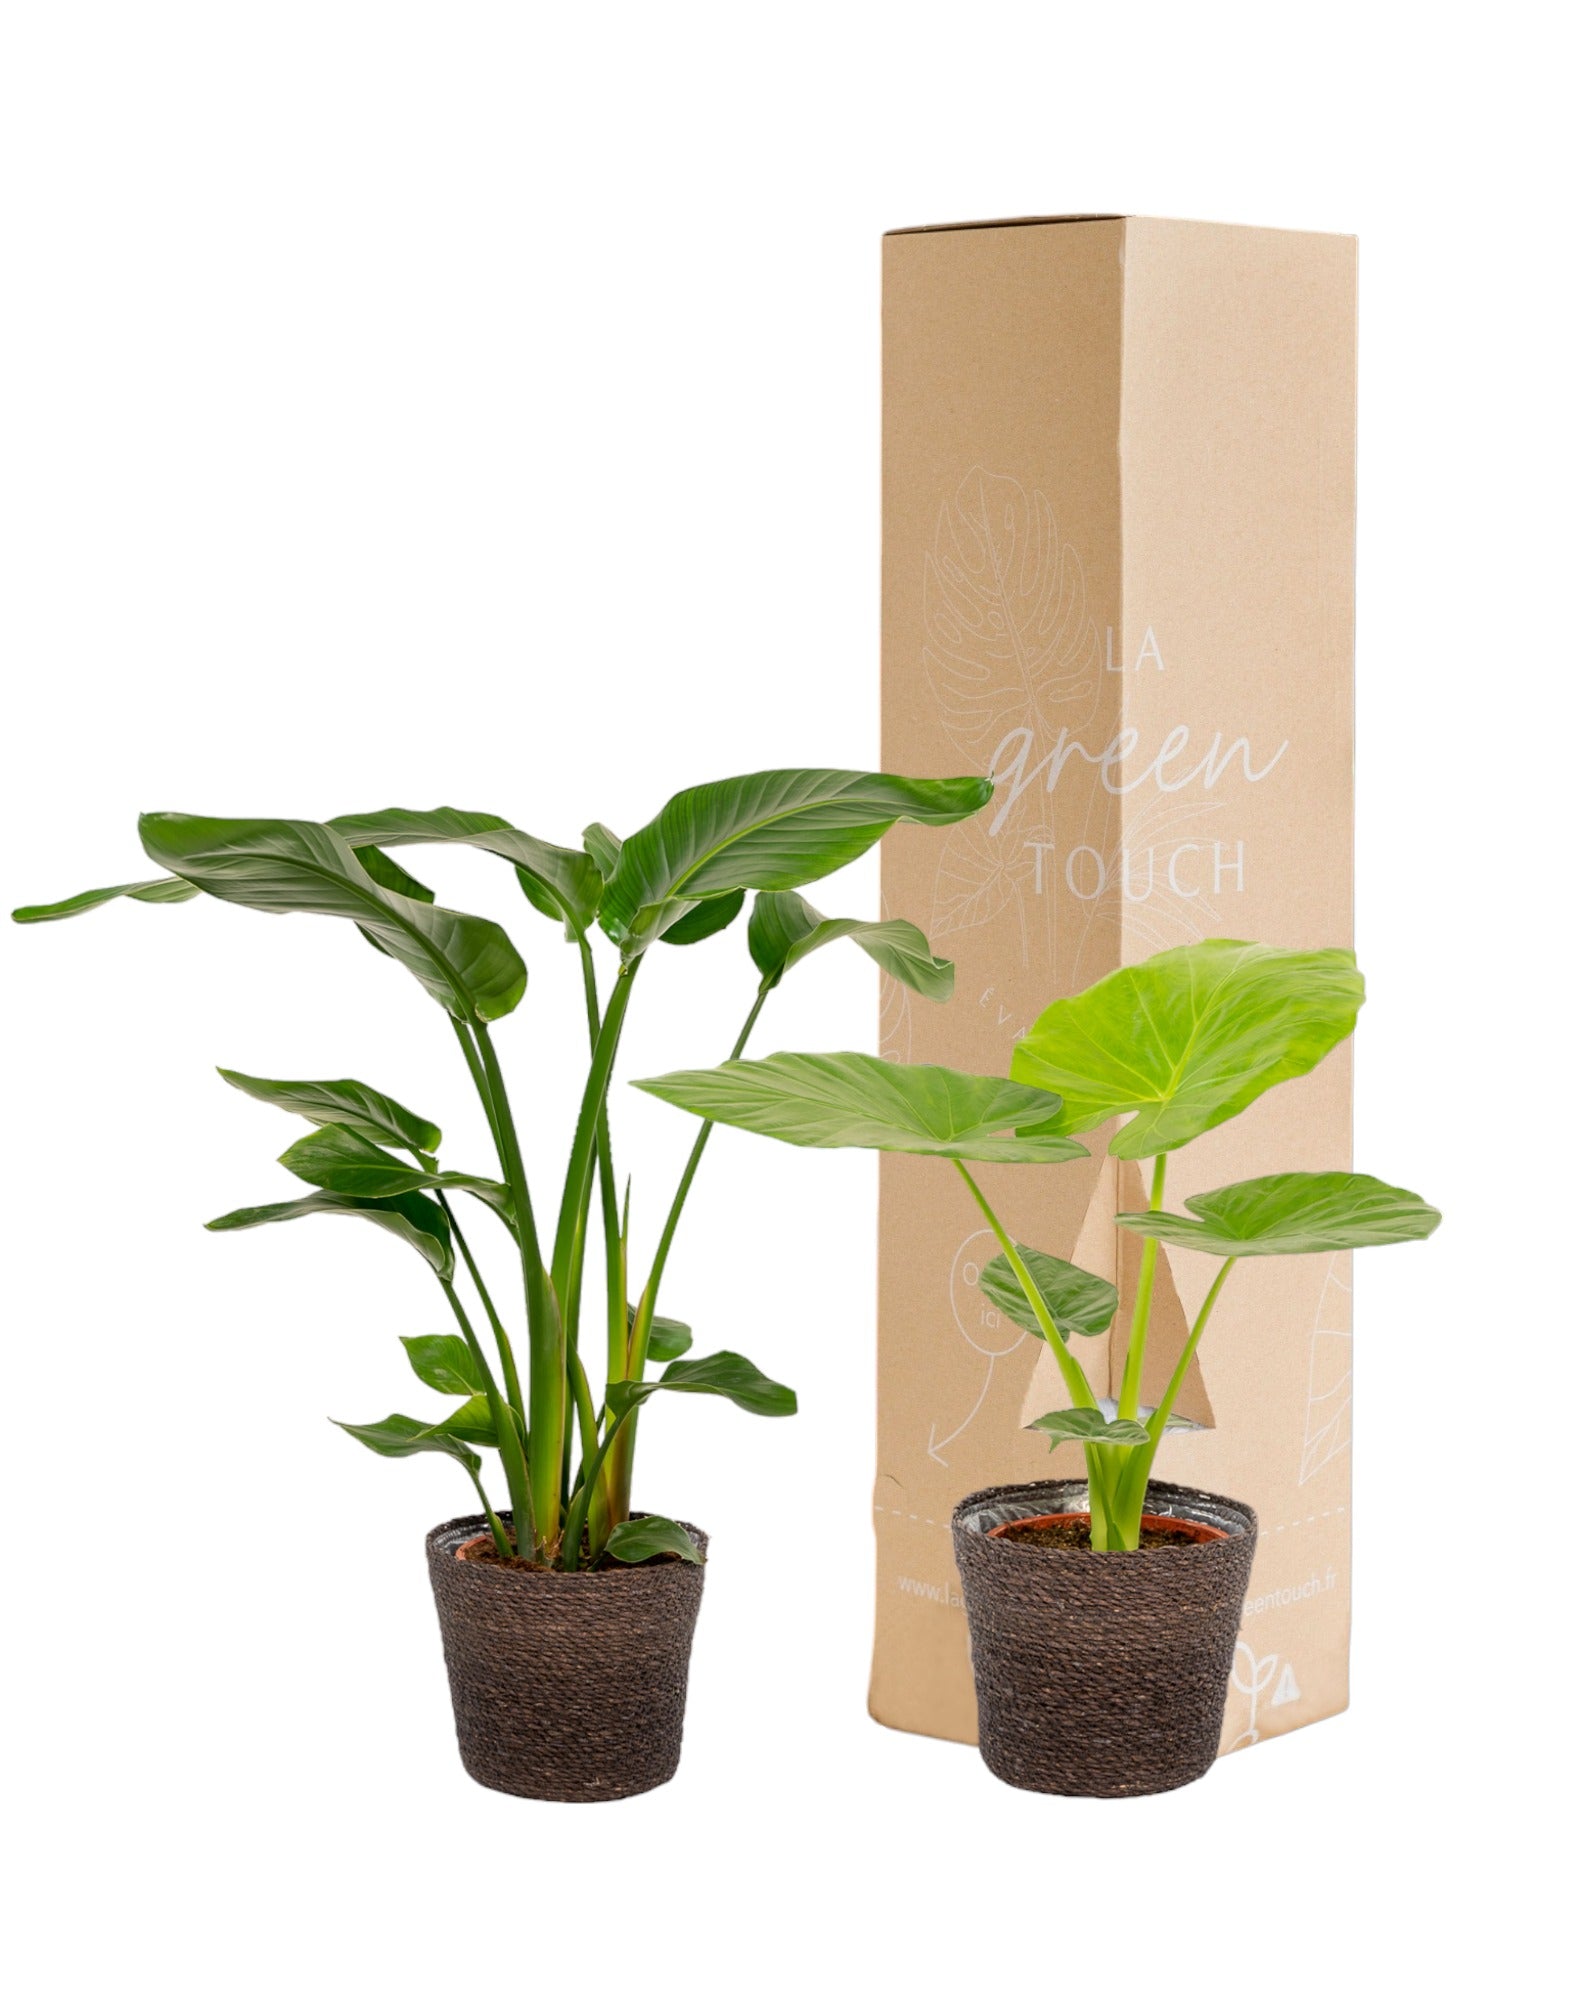 Plante d'intérieur - strelitzia nicolai - lot de 2 plantes - coffret cadeau 80.0cm